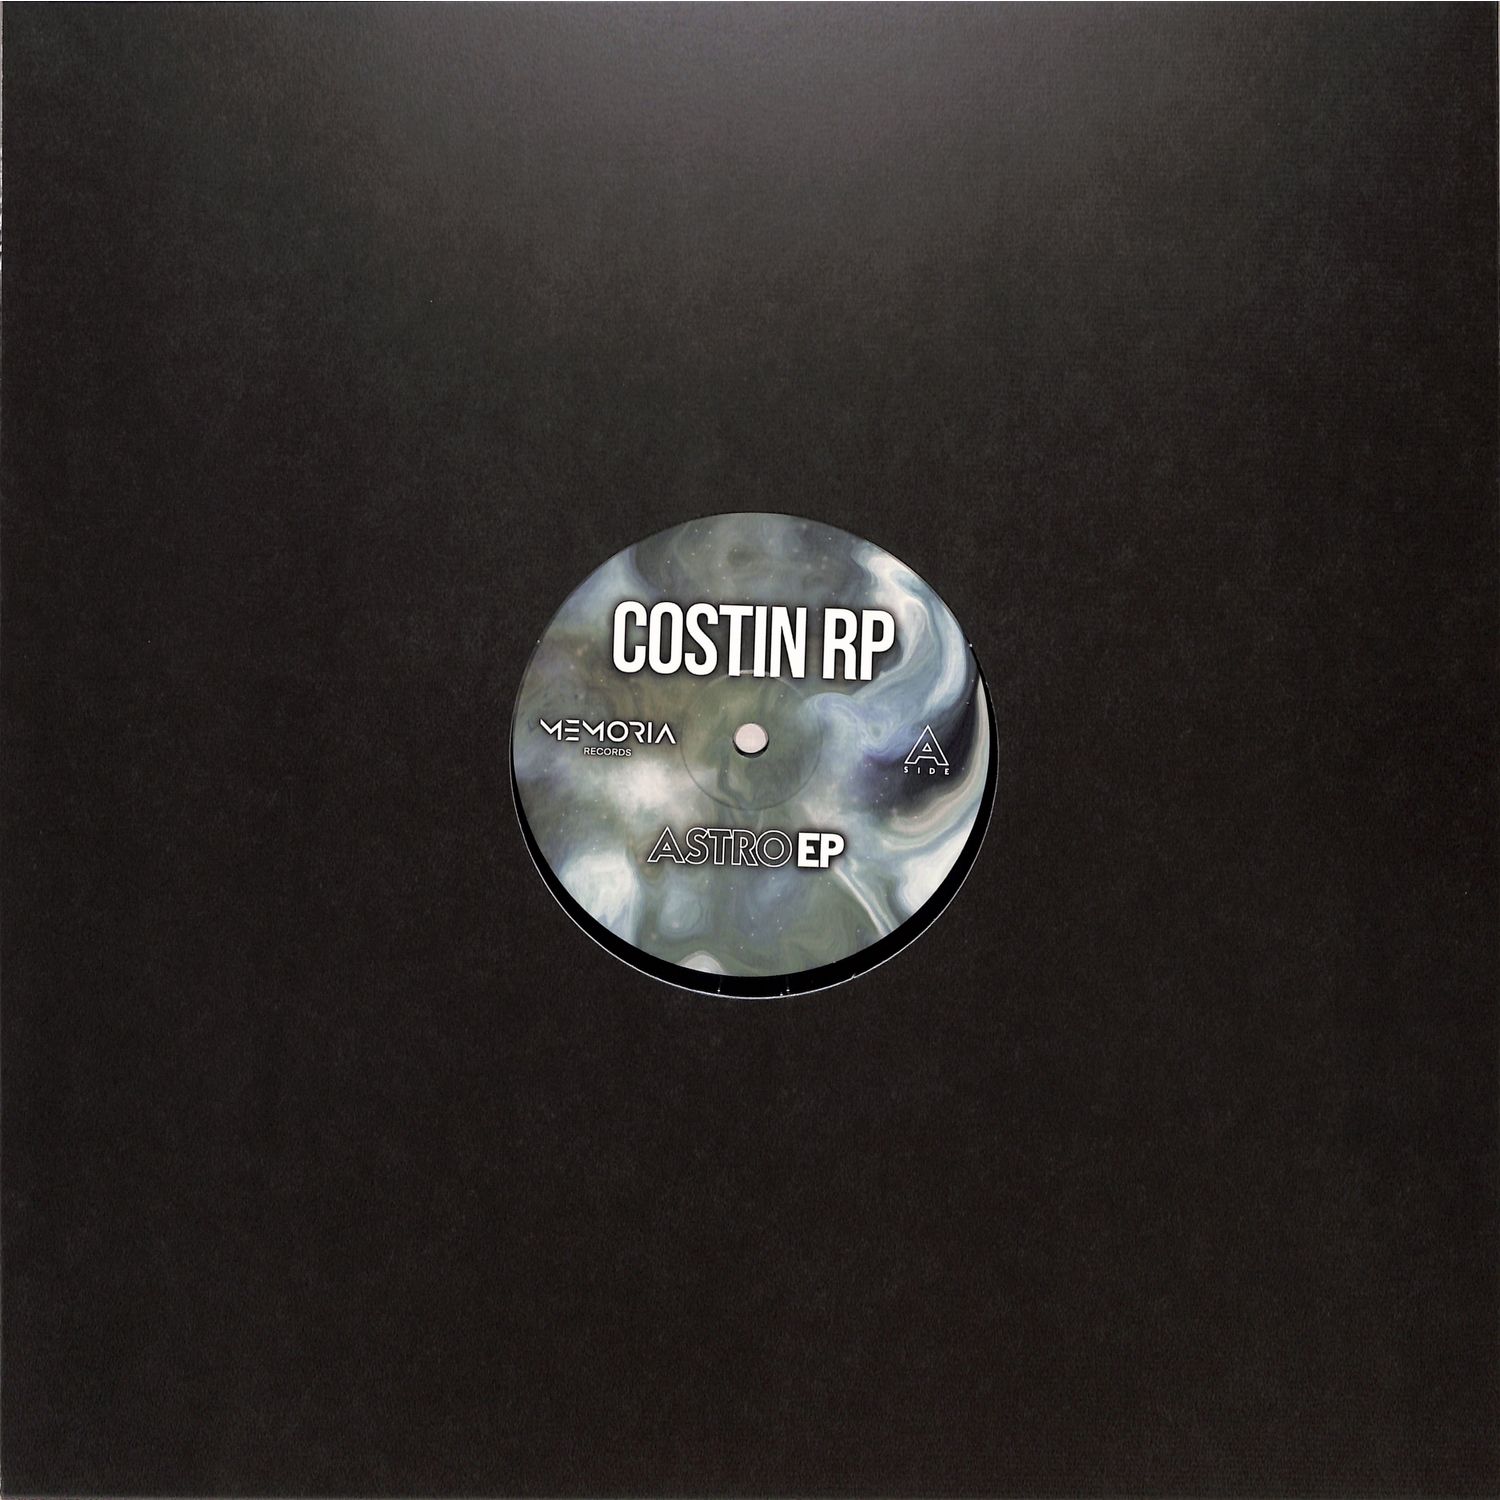 Costin Rp - ASTRO EP